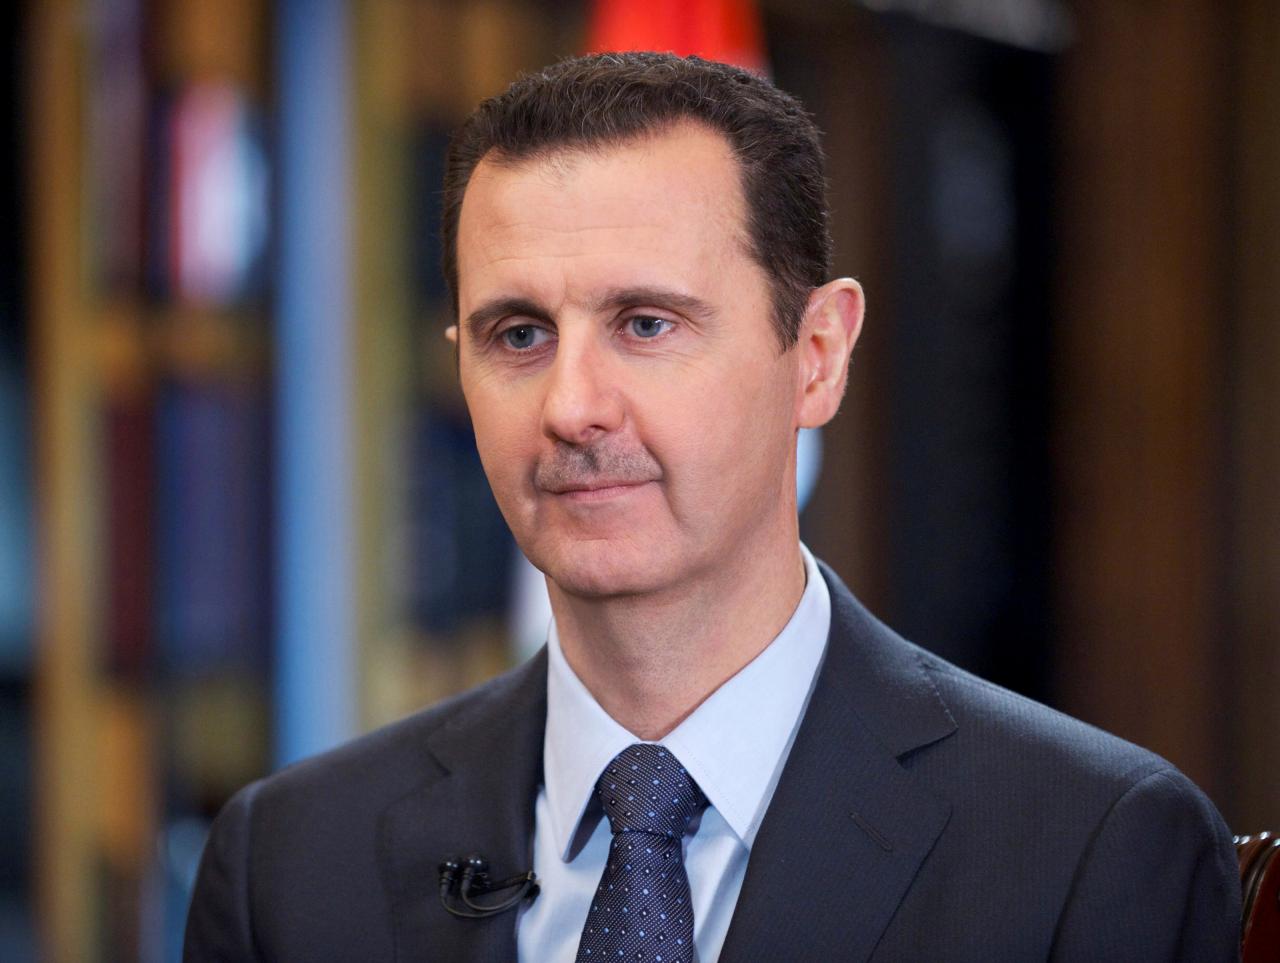 Syria's President Bashar al-Assad speaks during interview in Damascus